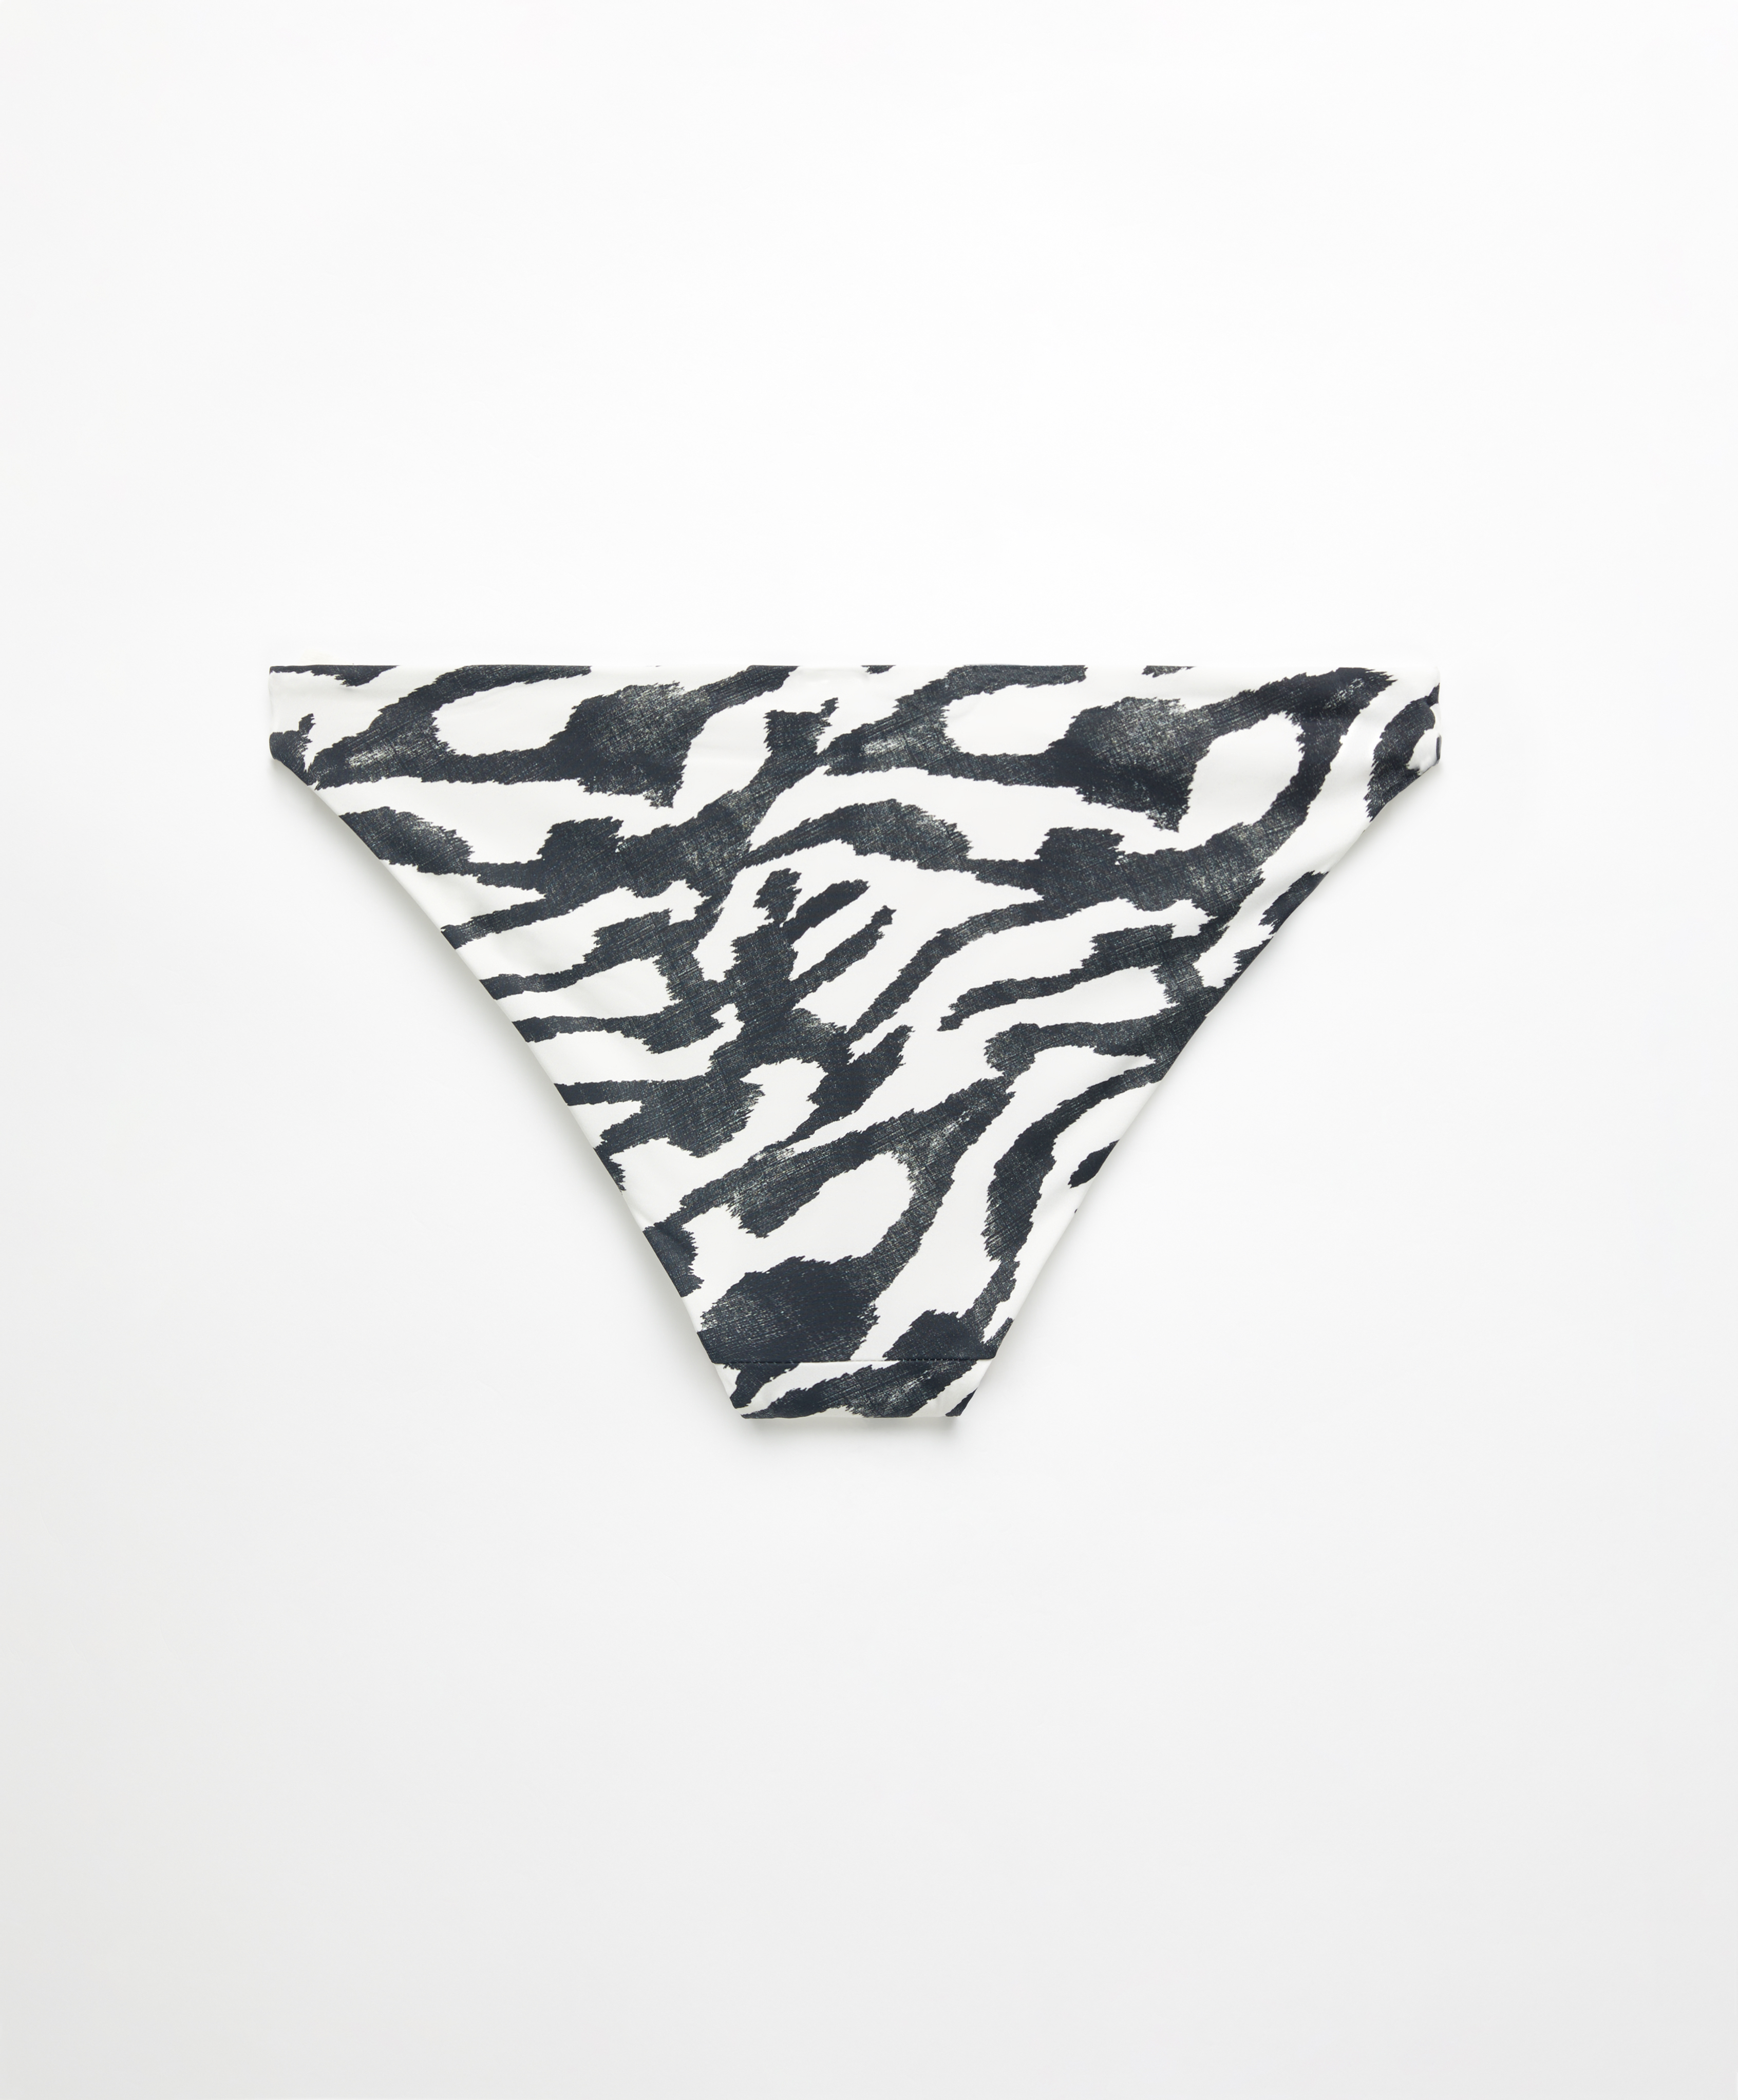 Zebra print classic bikini briefs